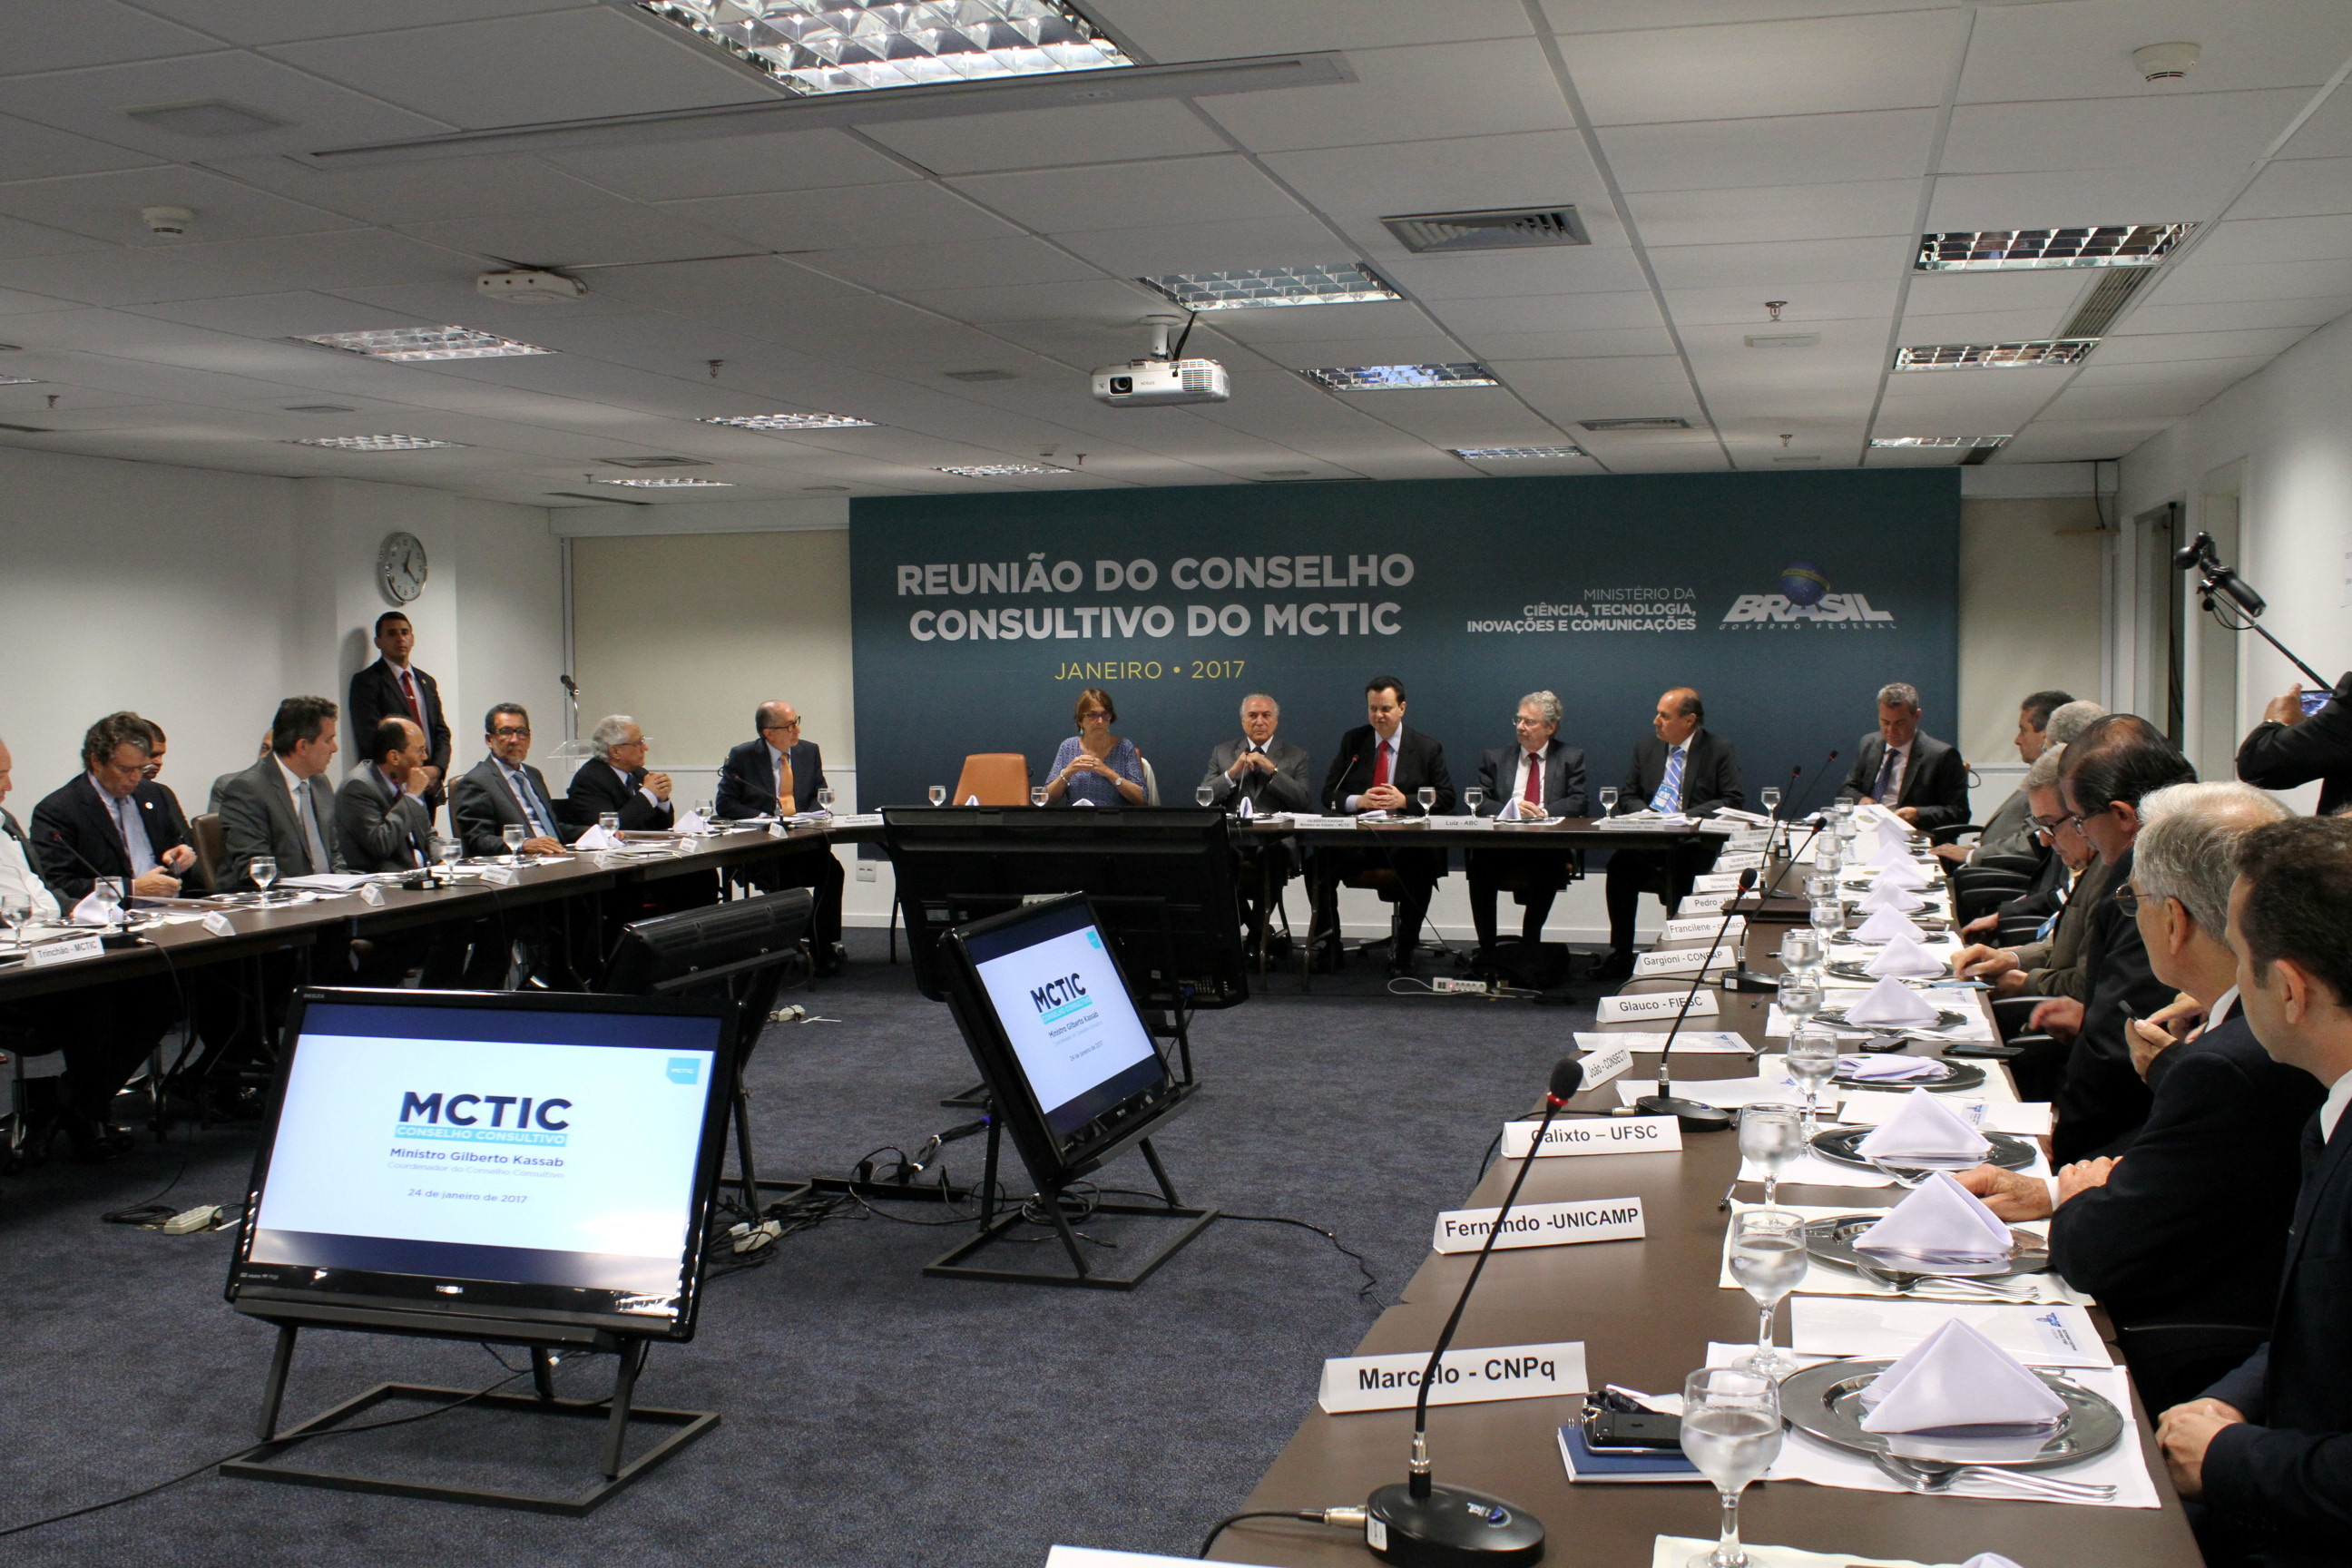  Reunião do Conselho Consultivo do MCTIC - 2017 - Foto Marcelo Gondim